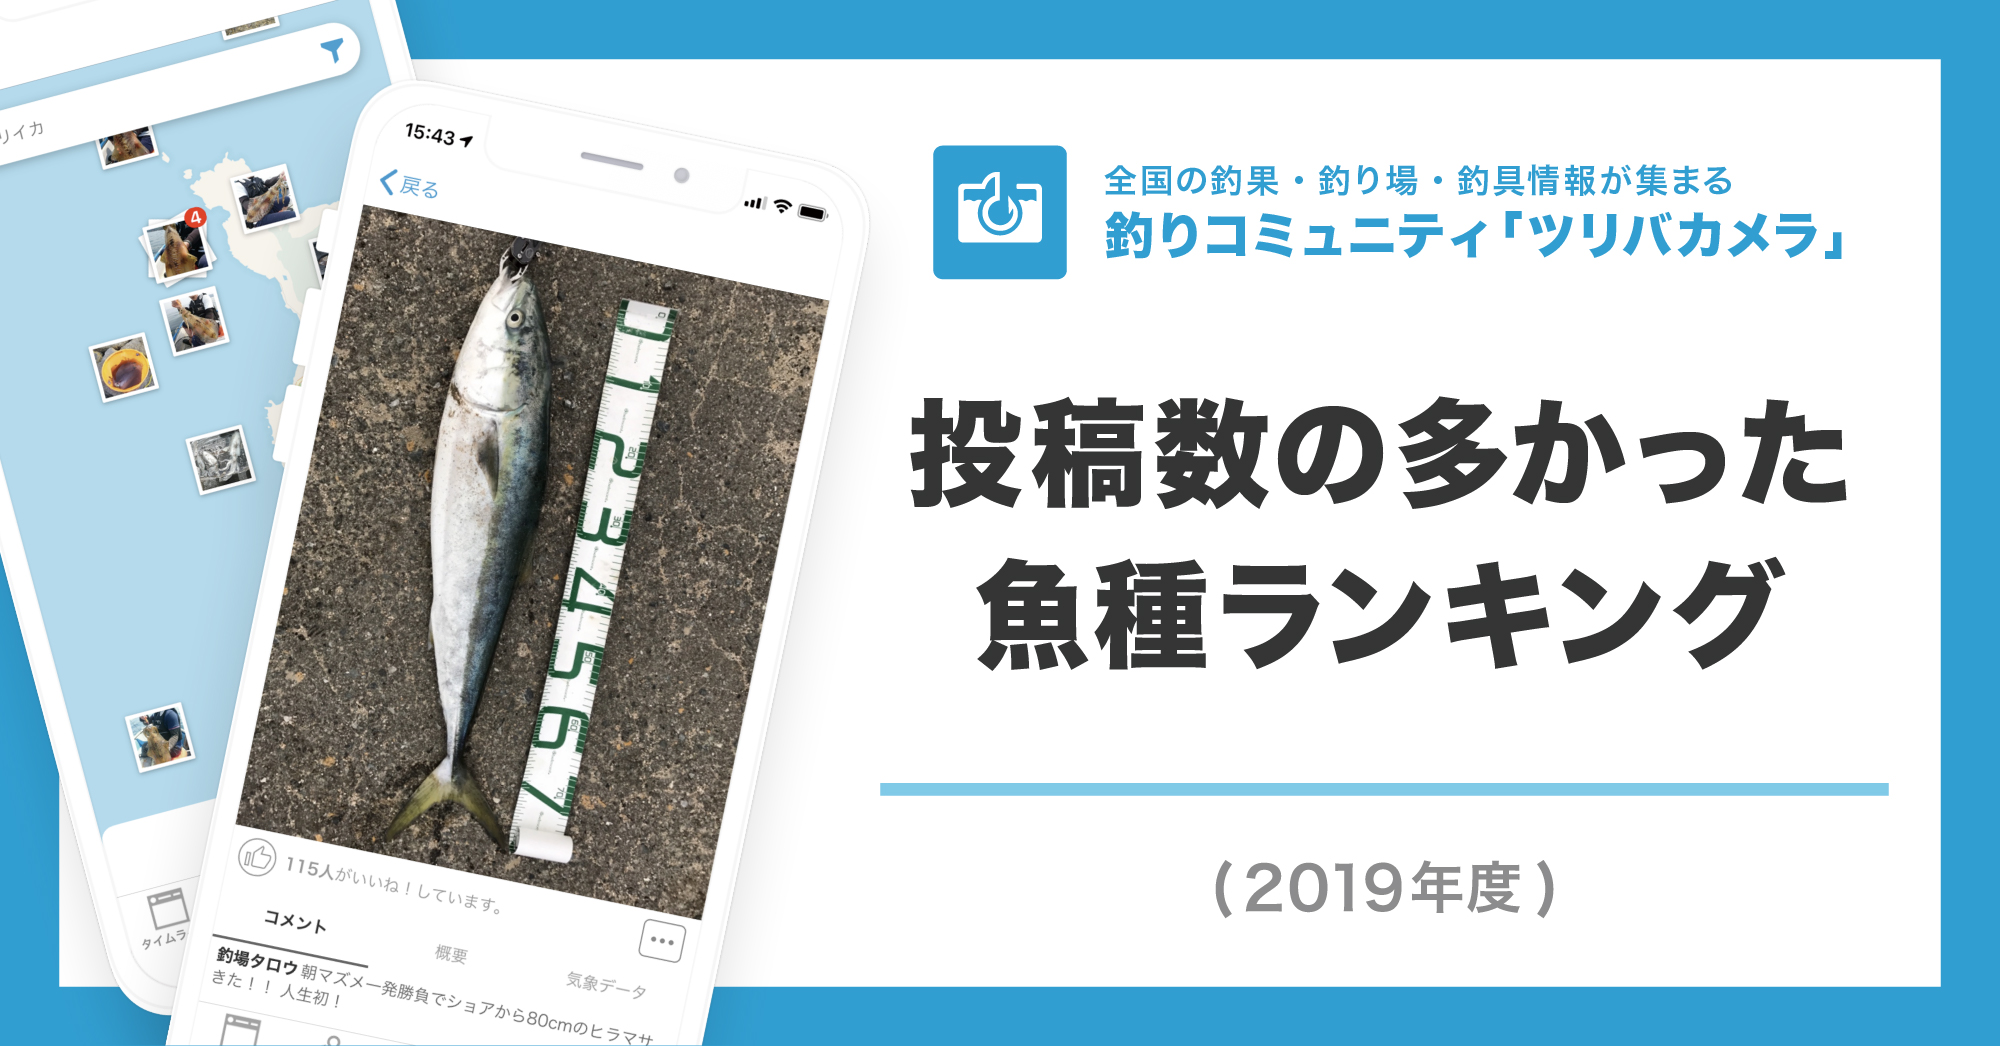 19年に一番釣られた魚は スズキ シーバス ウミーベ株式会社が釣りコミュニティサービス ツリバカメラ の19年魚 種ランキングを発表 ウミーべ株式会社のプレスリリース